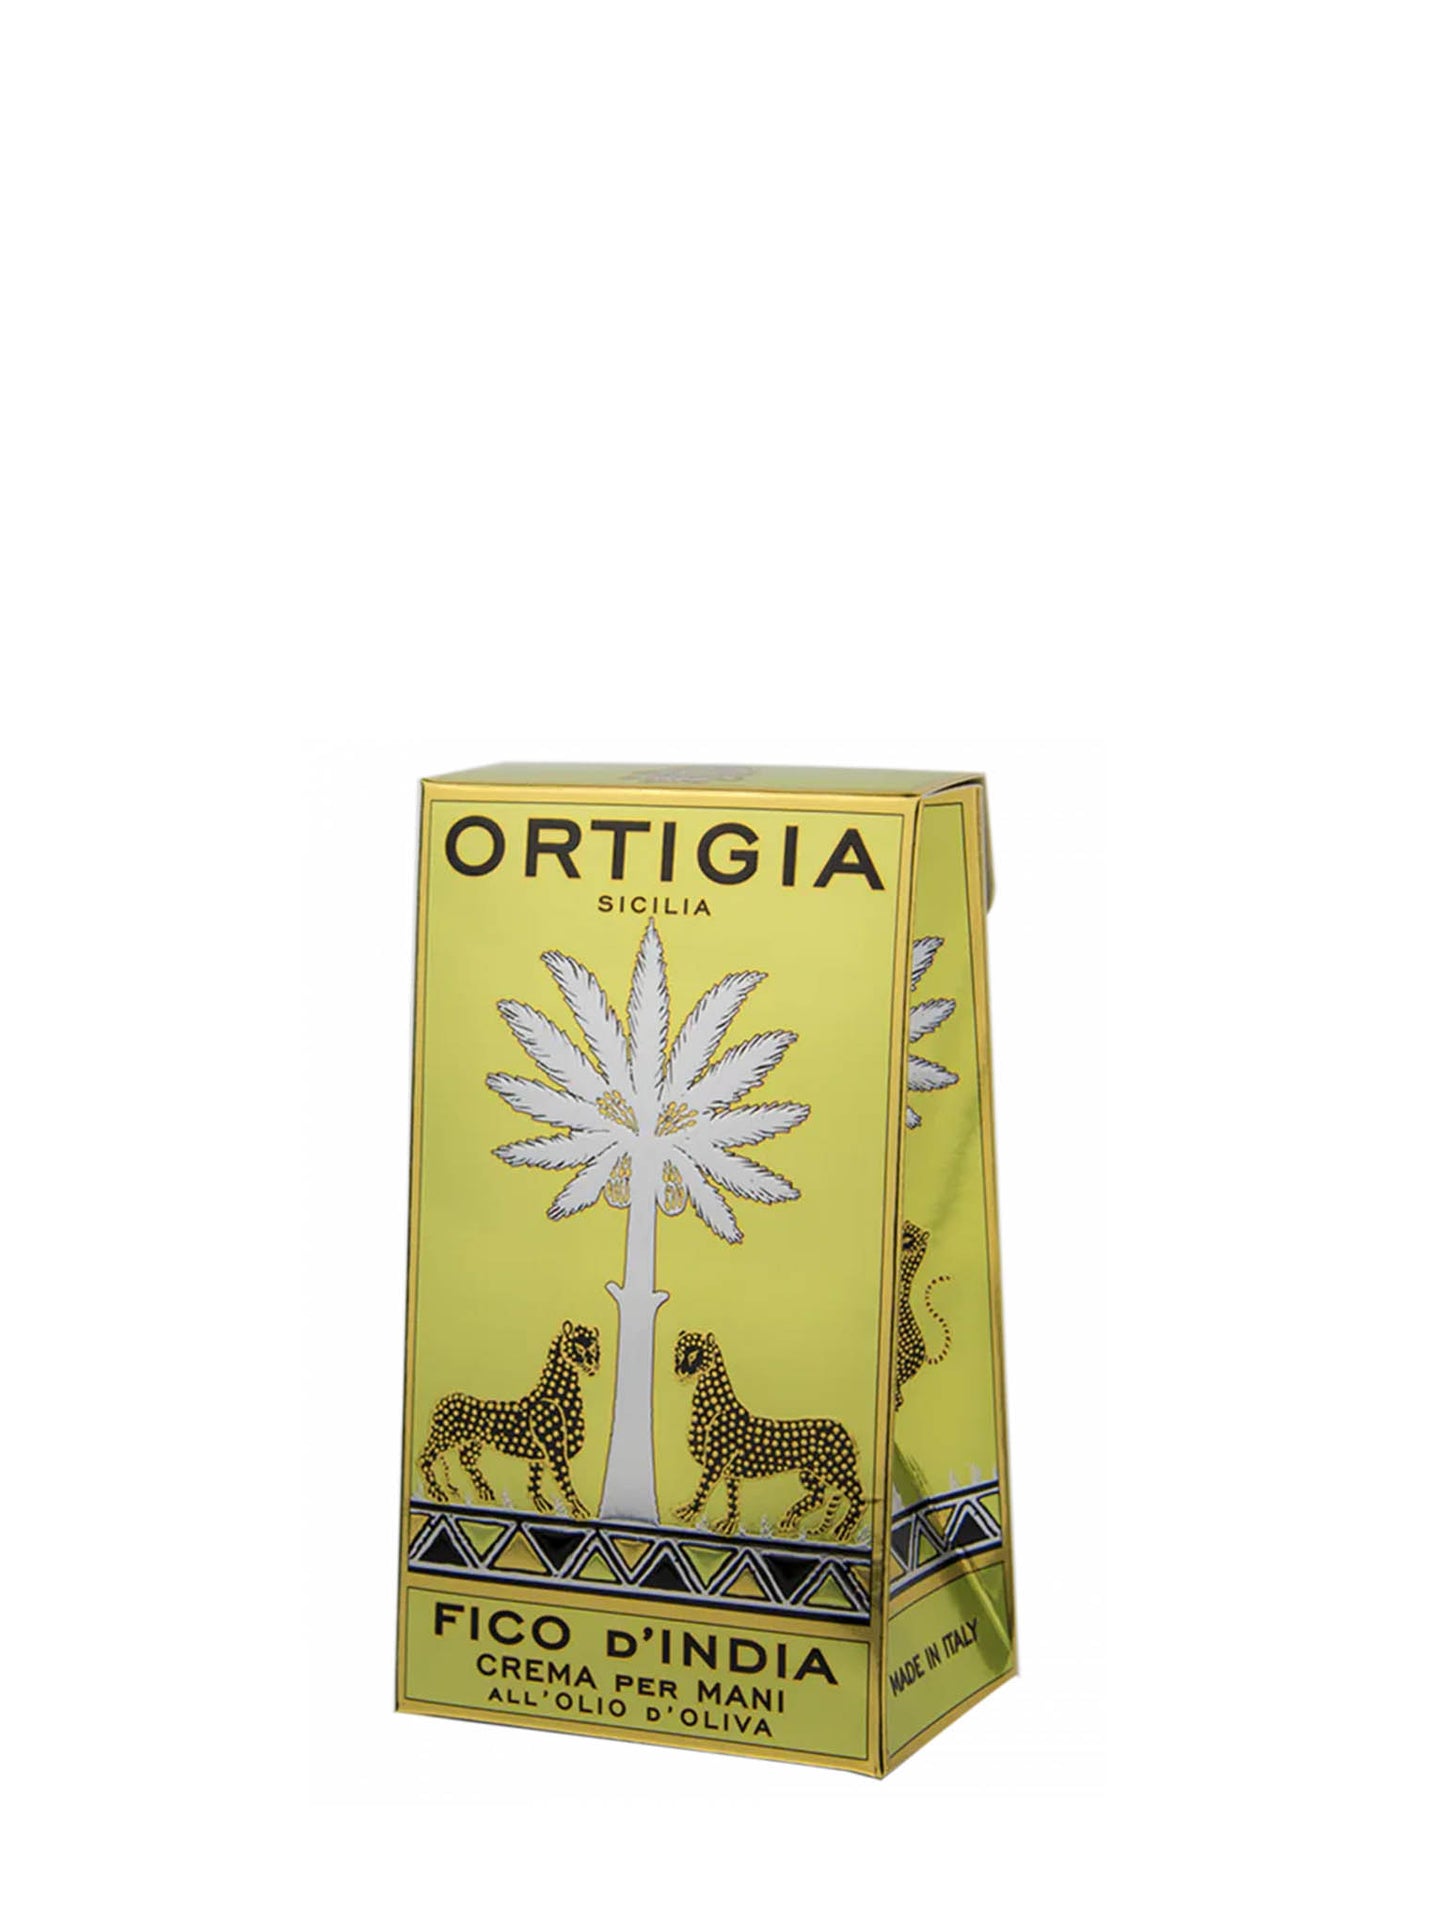 Ortigia Fico D_India Hand Cream - 80ml Packaging